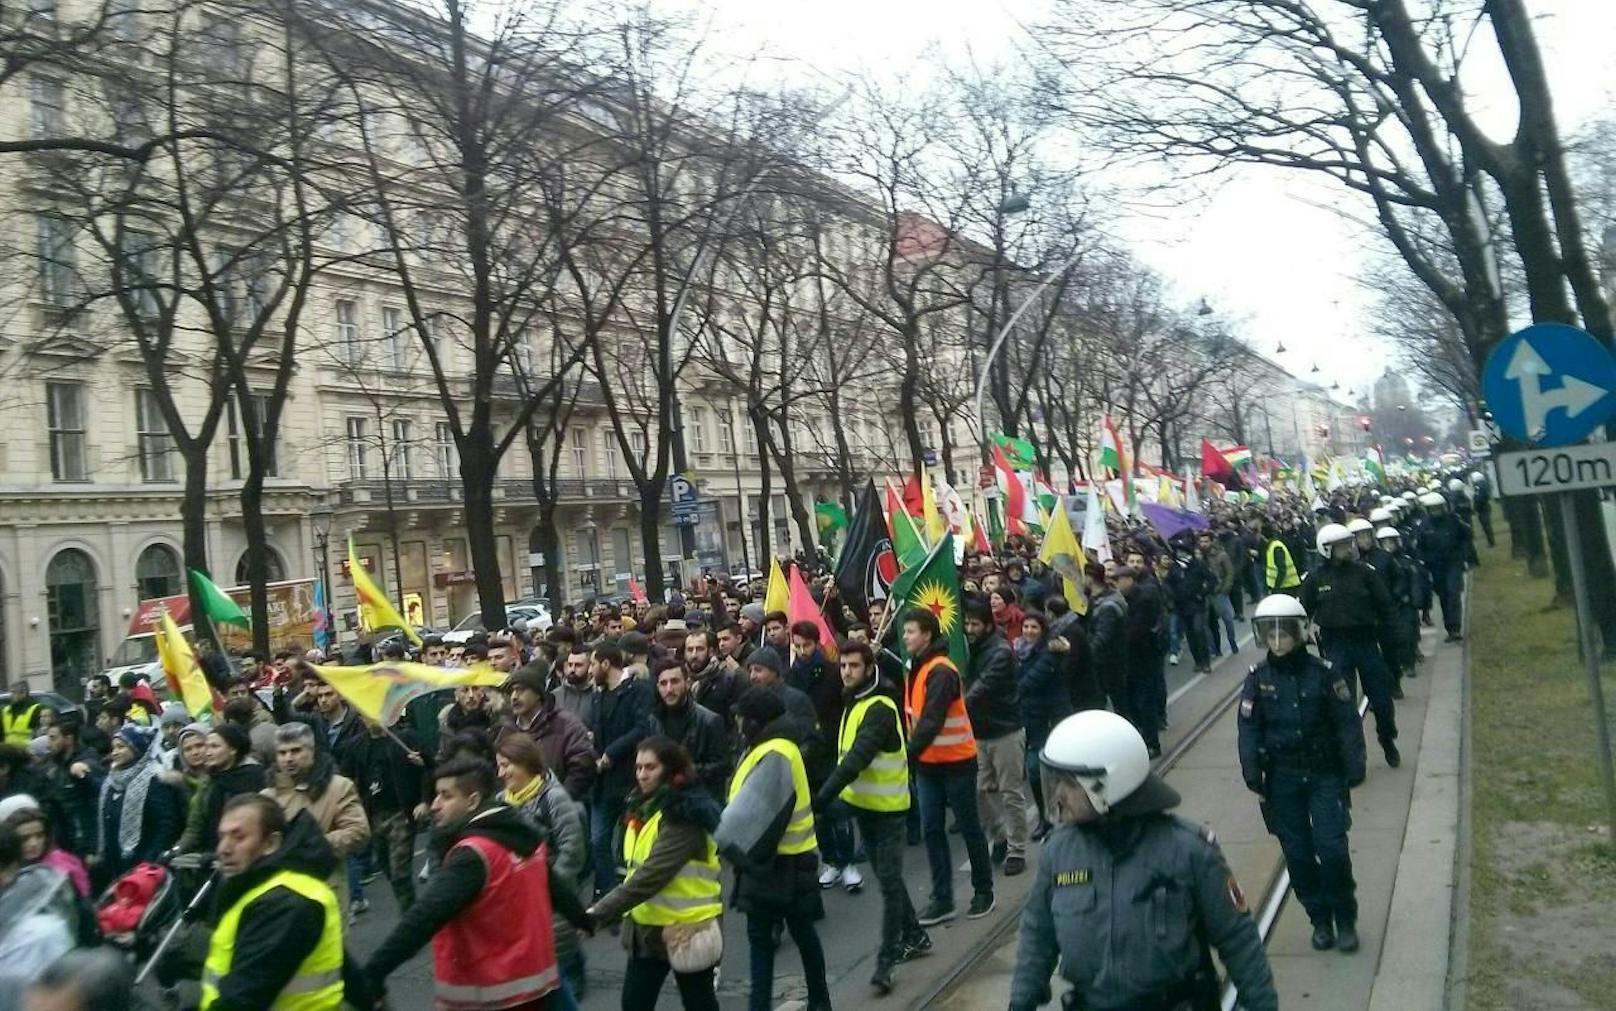 In Wien hat am Samstagnachmittag eine Demonstration gegen den türkischen Militäreinsatz in der nordsyrischen Region Afrin stattgefunden. Nach den Zwischenfällen setzte es mehrere Anzeigen.